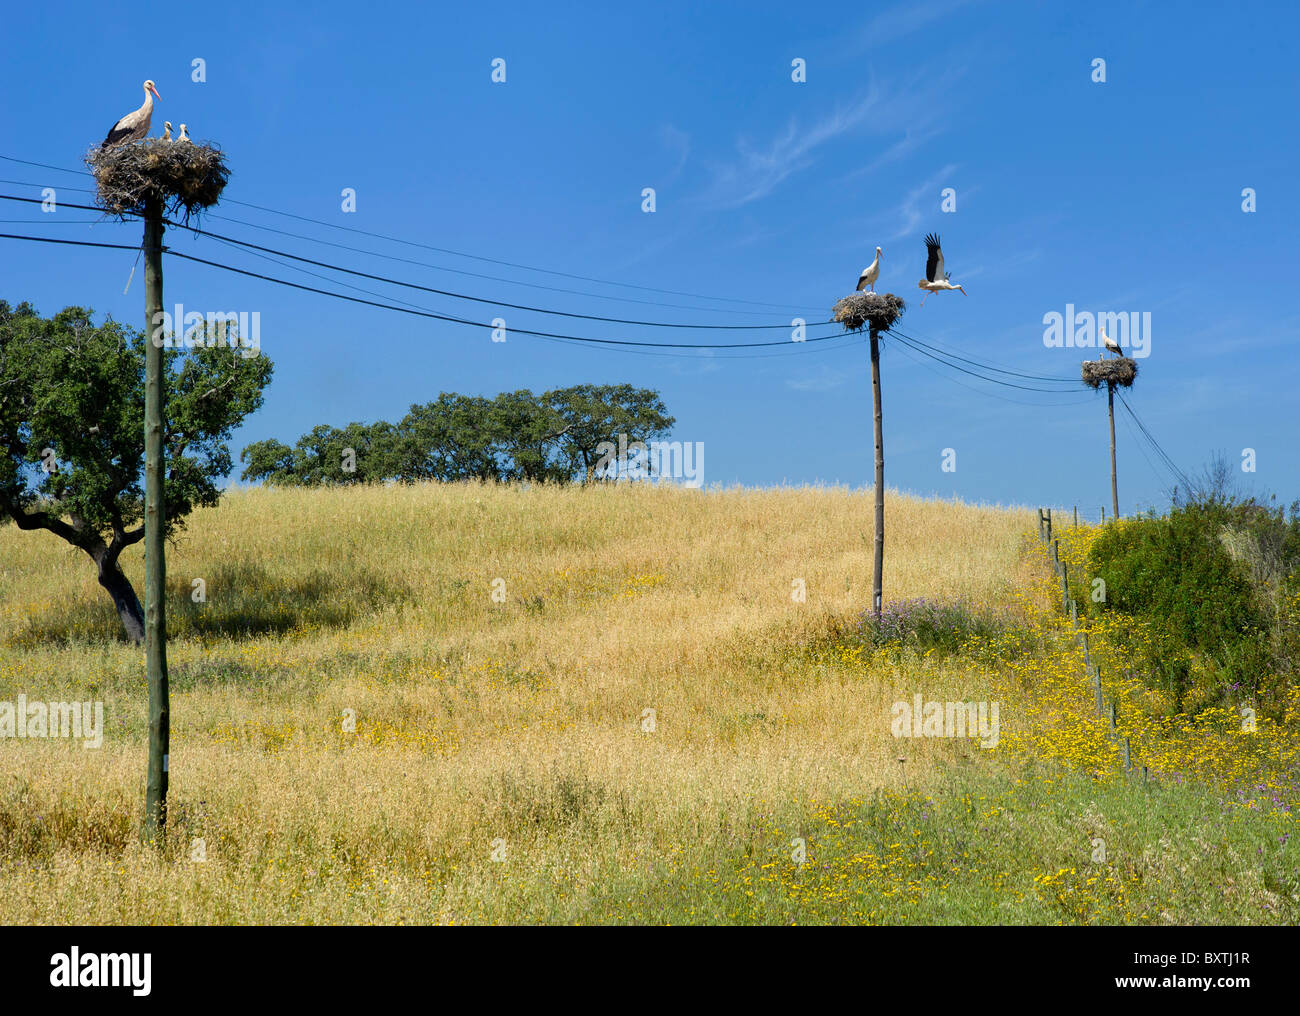 Portugal, Alentejo, in der Nähe der spanischen Grenze, Storchennester auf Telegrafenmasten, typisch für den Alentejo und Extremadura Stockfoto